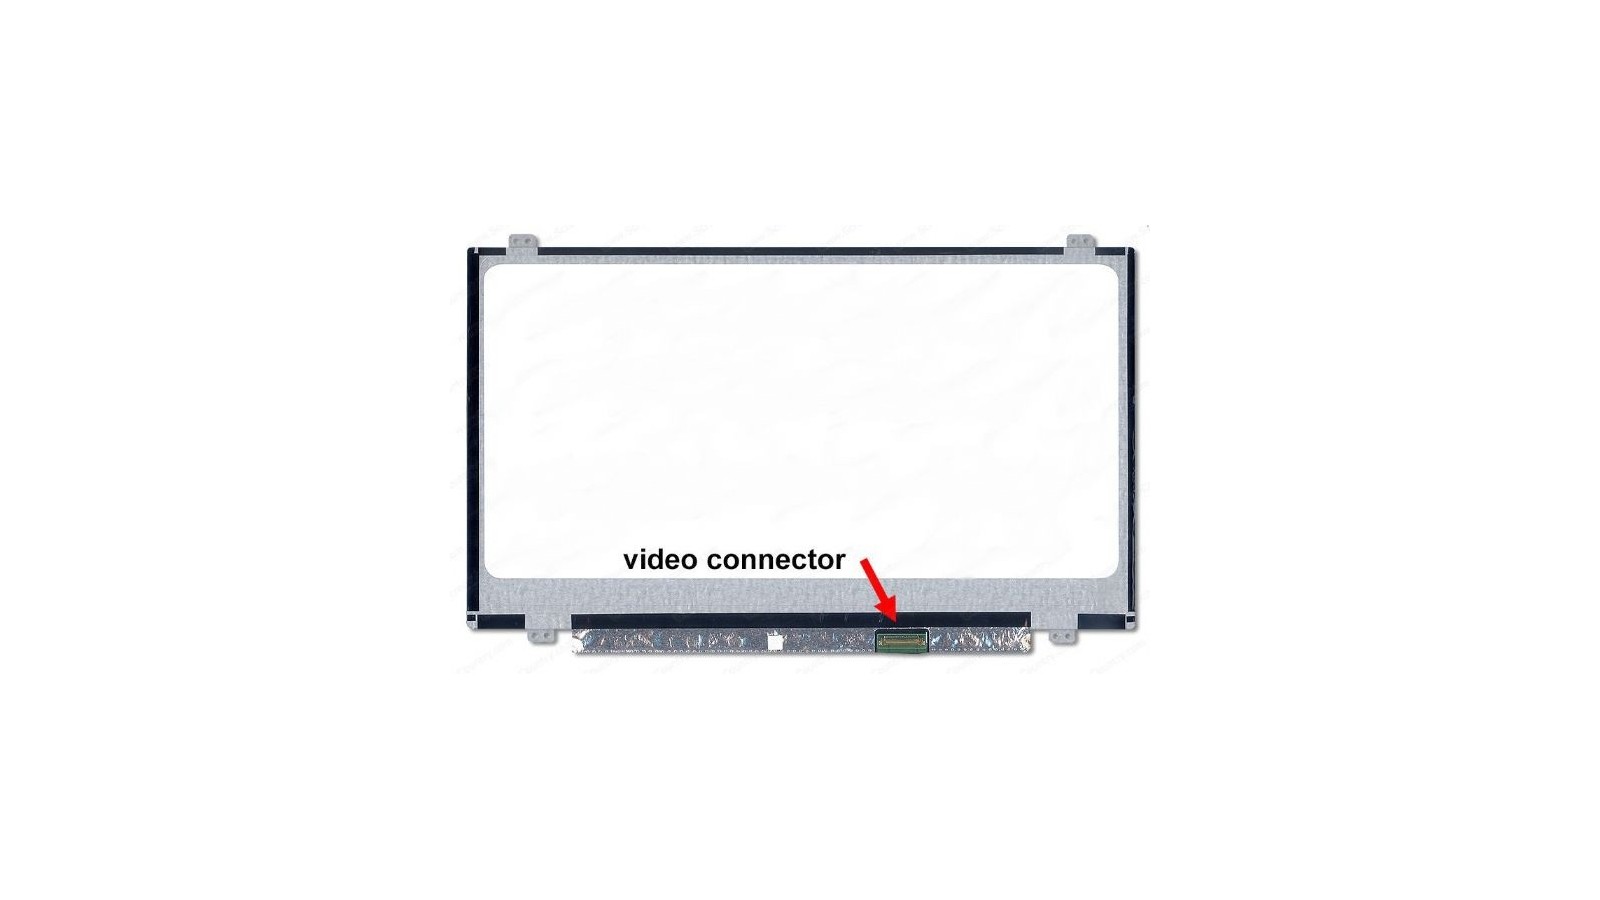 Display LCD Schermo 14.0 LED compatibile con N140BGE-E33 REV.C1